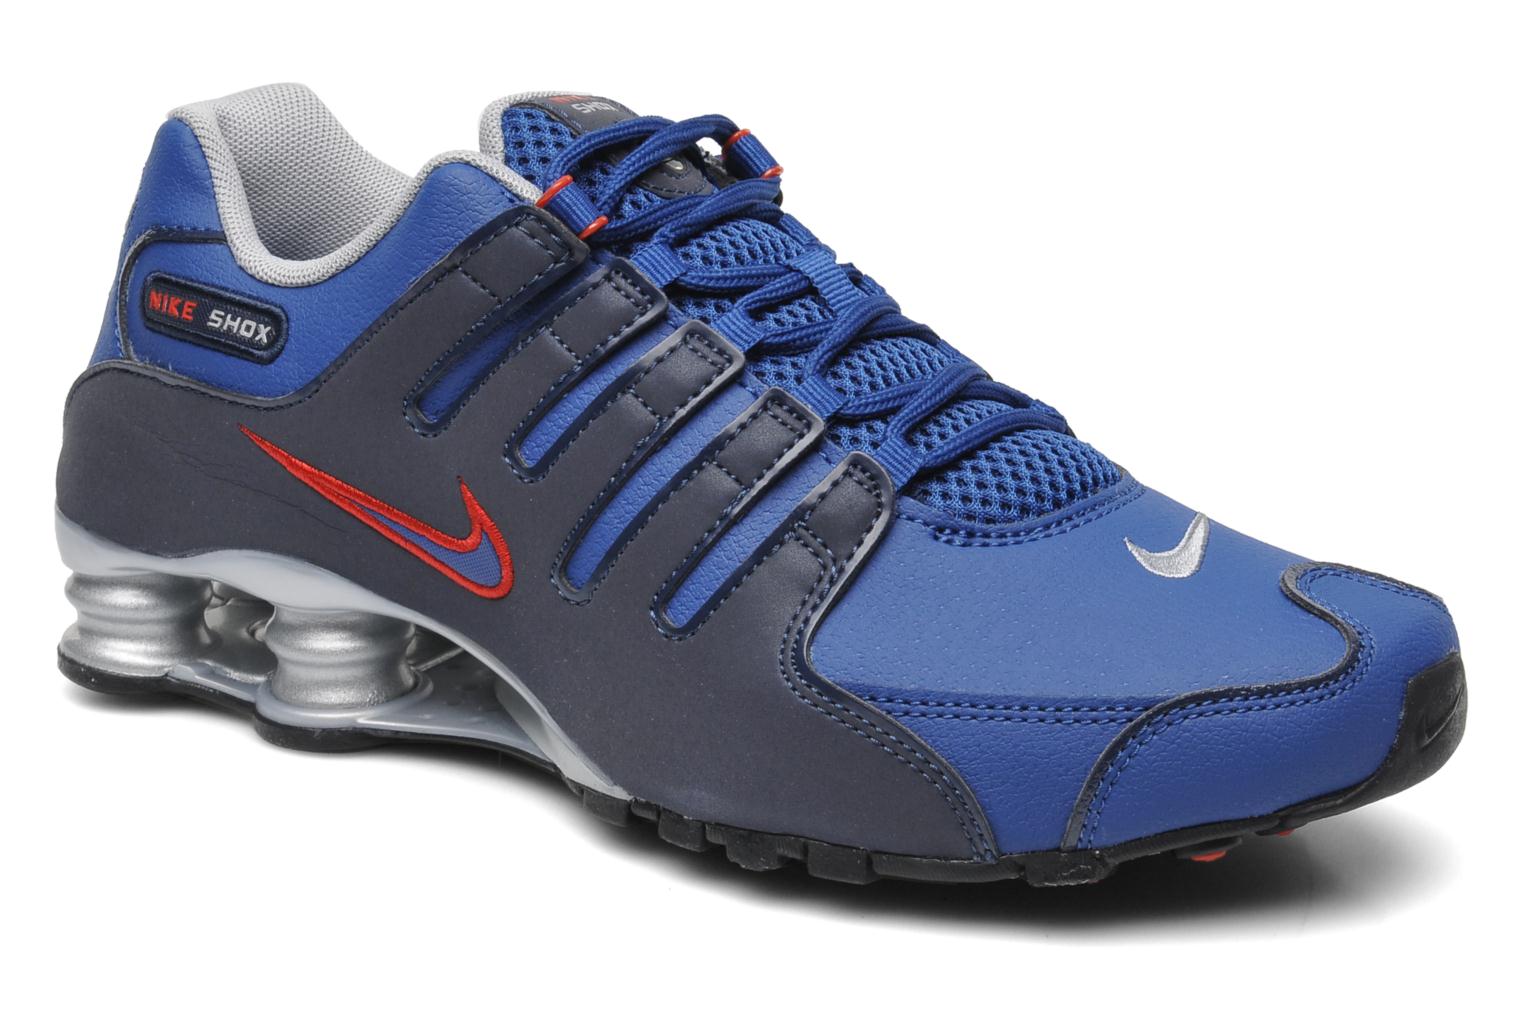 Nike Nike shox nz eu Sport shoes in Blue at Sarenza.co.uk (207438)